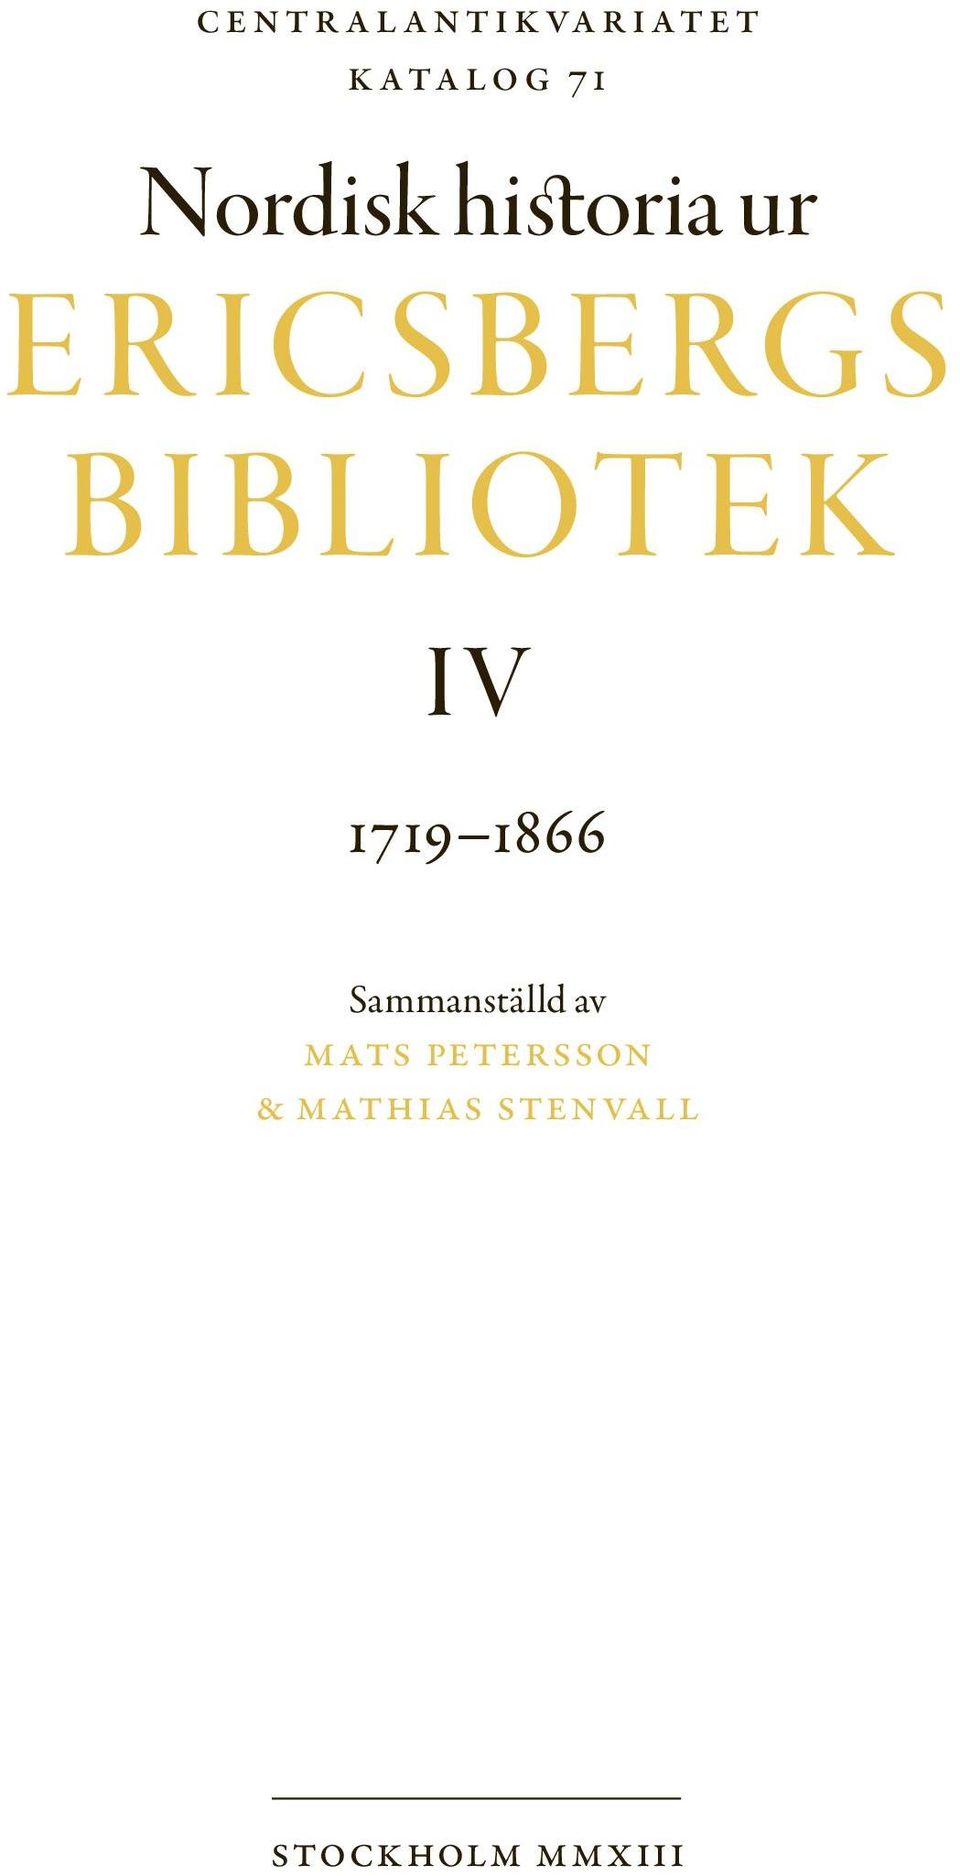 BIBLIOTE K I V 1719 1866 Sammanställd